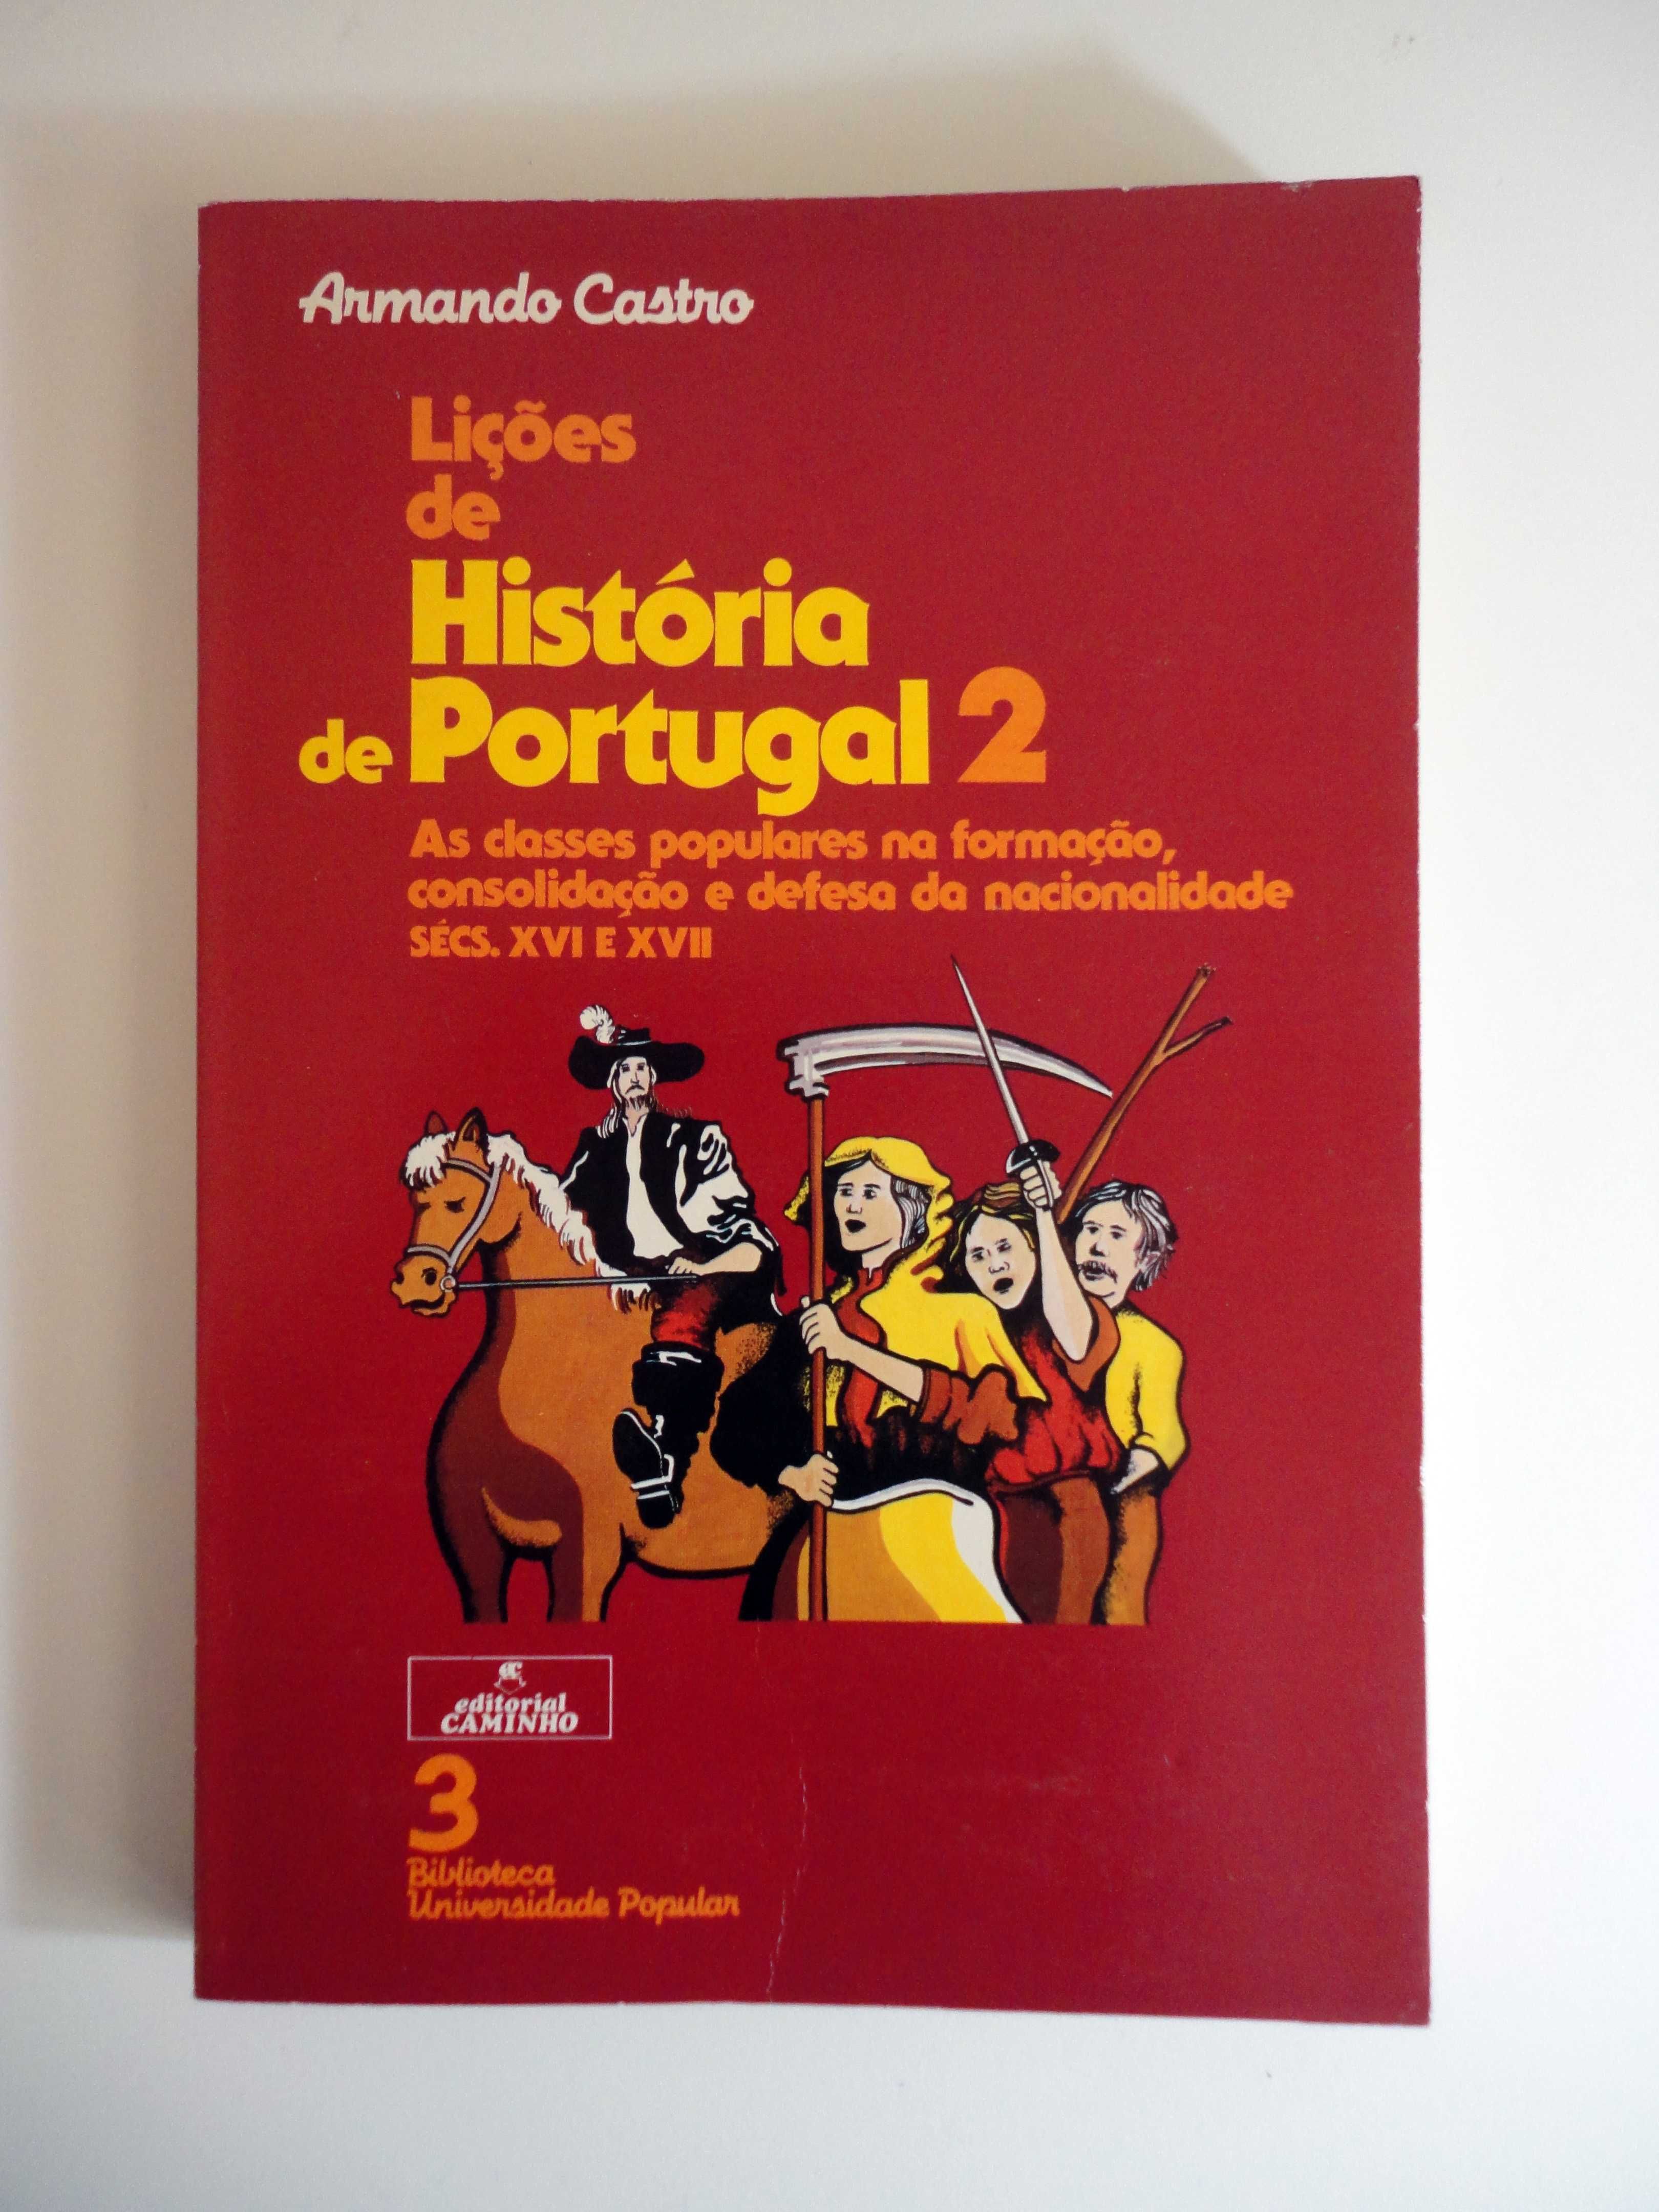 "Lições de História de Portugal 2" (Armando Castro)